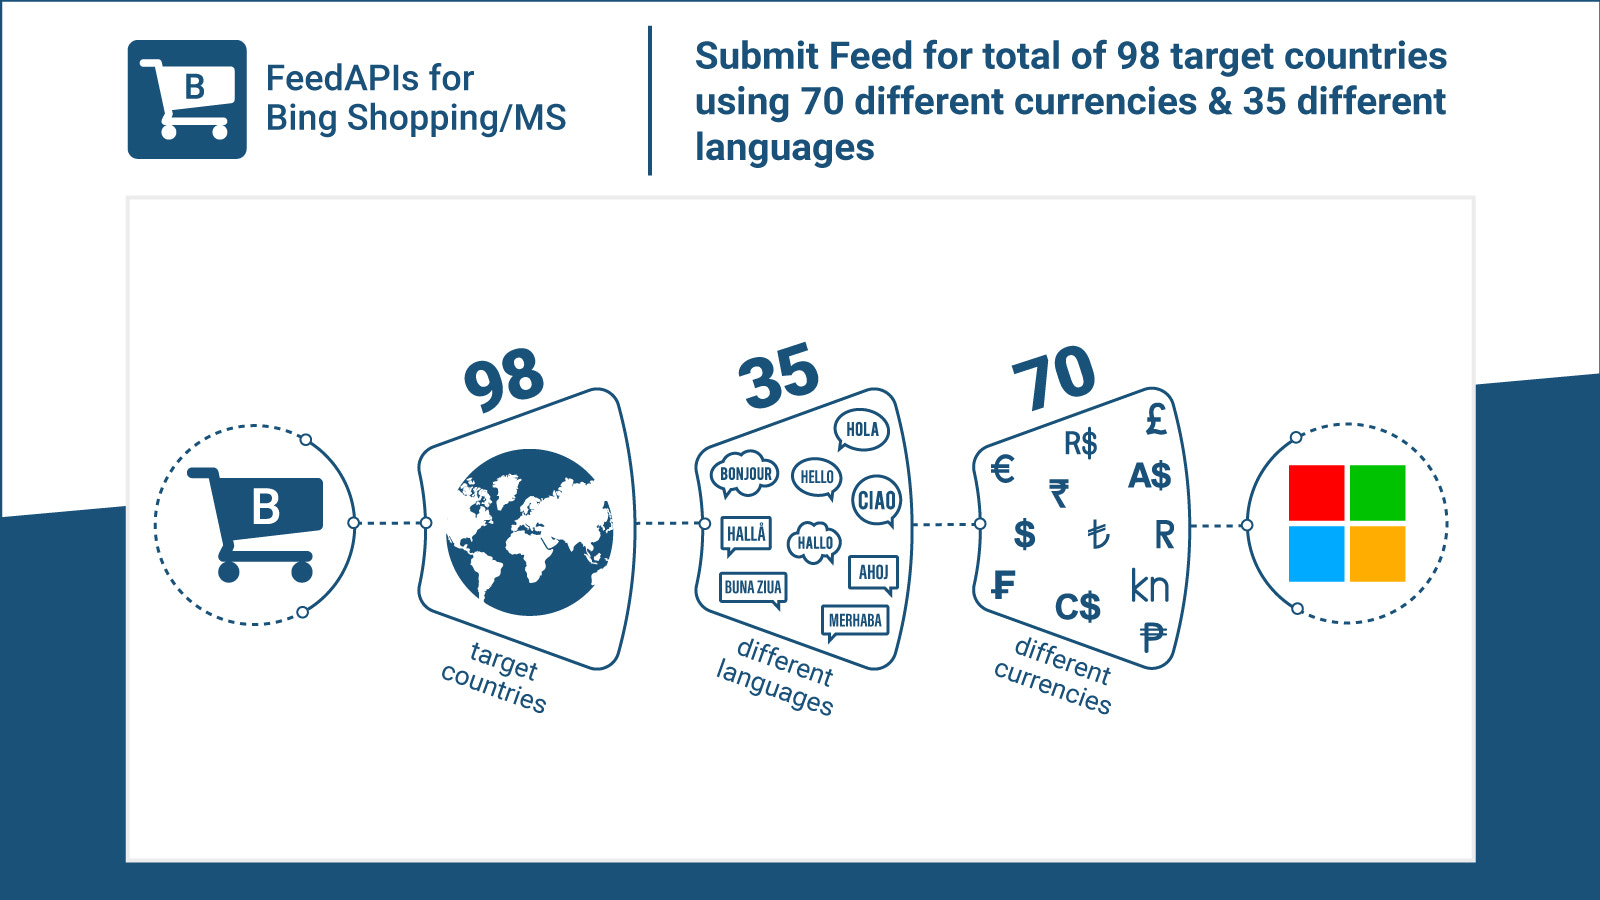 Übermitteln Sie Feeds für 98 Länder in 35 Sprachen und 70 Währungen